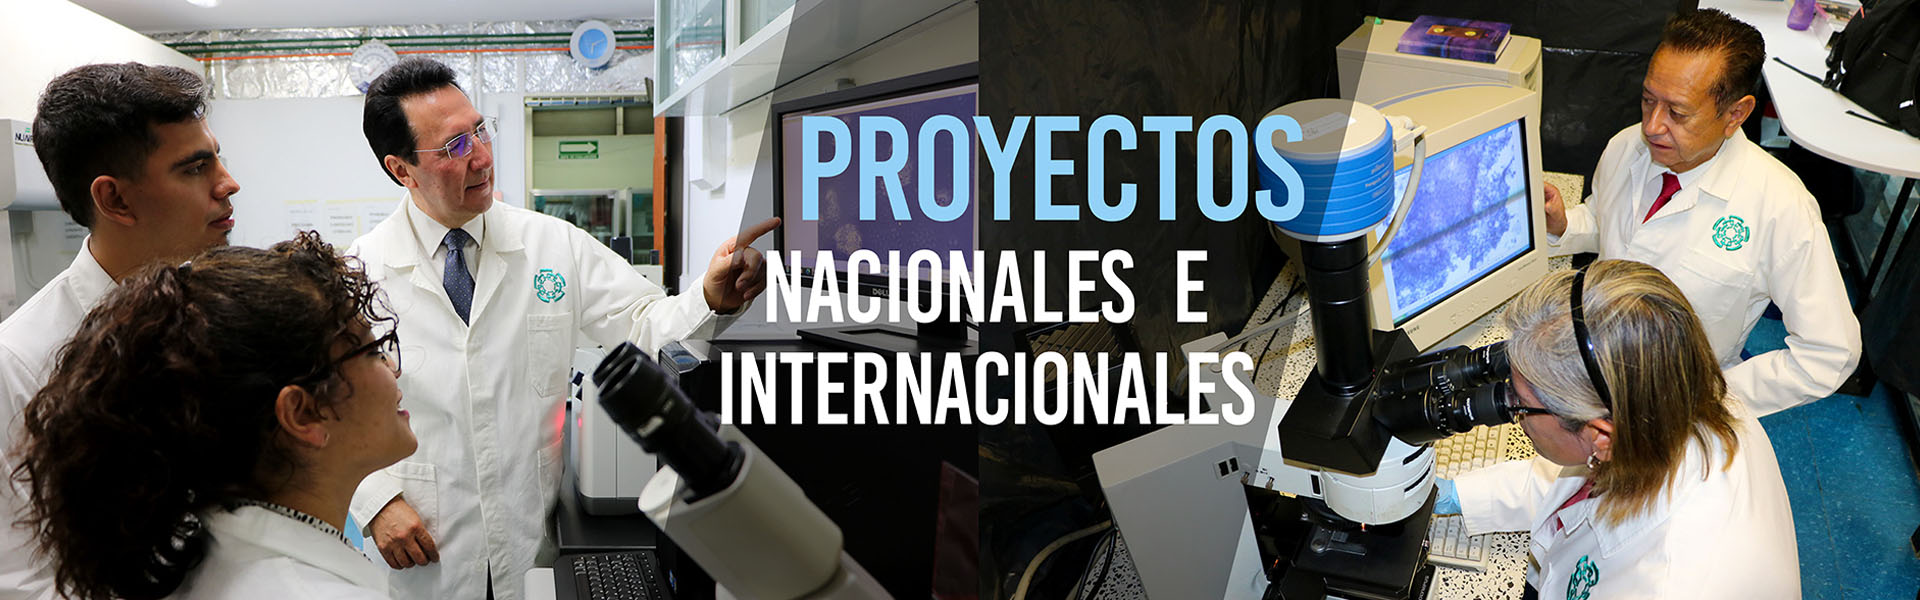 Proyectos Nacionales e Internacionales